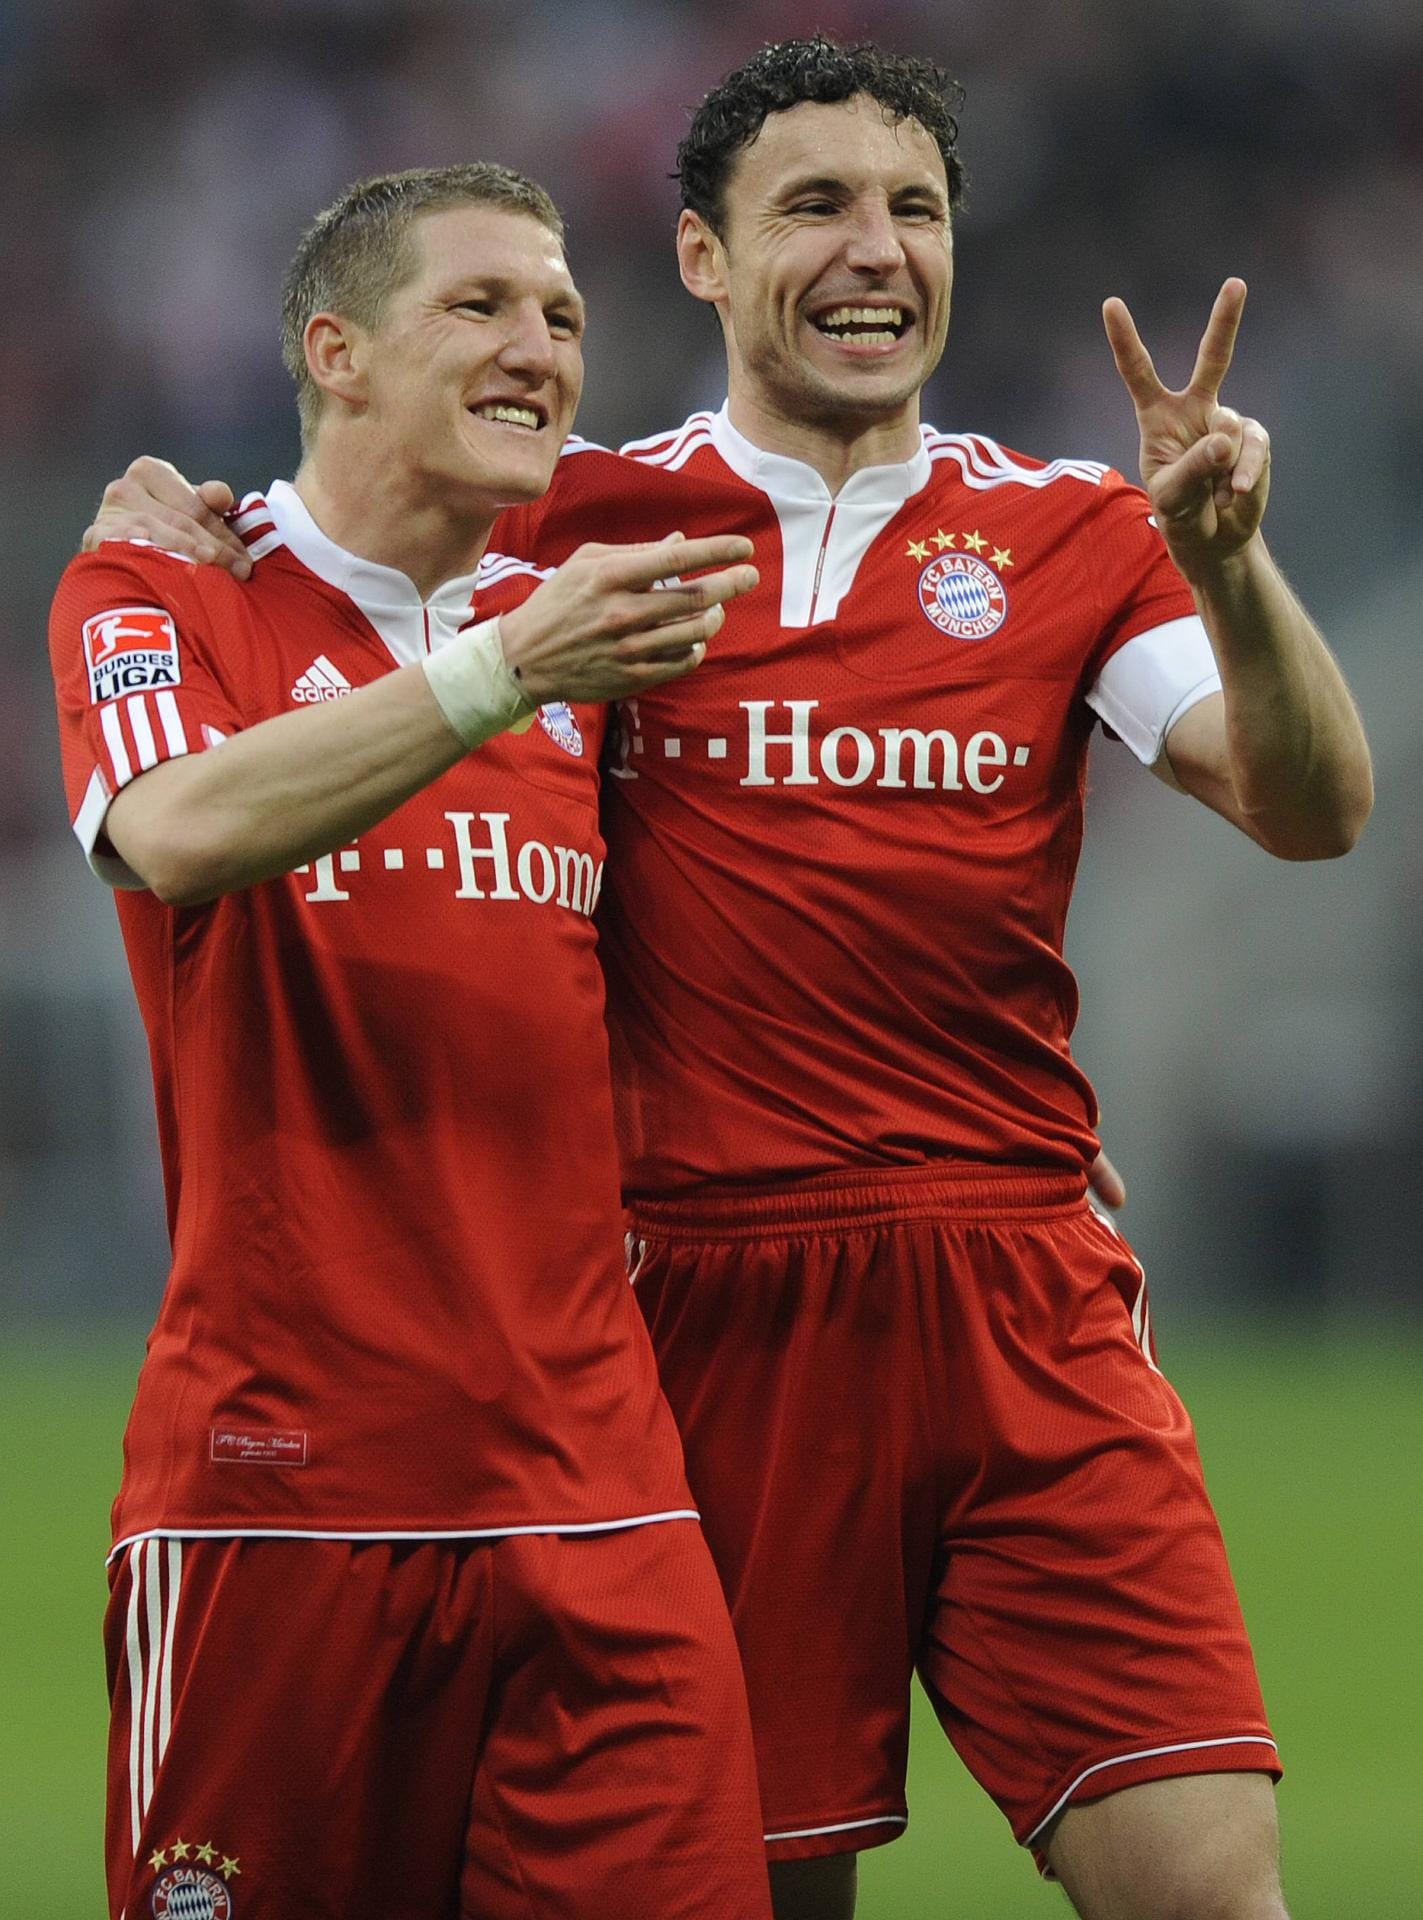 2009 wird Louis van Gaal Trainer in München. Er beordert Schweinsteiger von den Außenpositionen ins zentrale defensive Mittelfeld. Mit Mark van Bommel bildet dieser nun die Doppel-Sechs bei den Bayern.